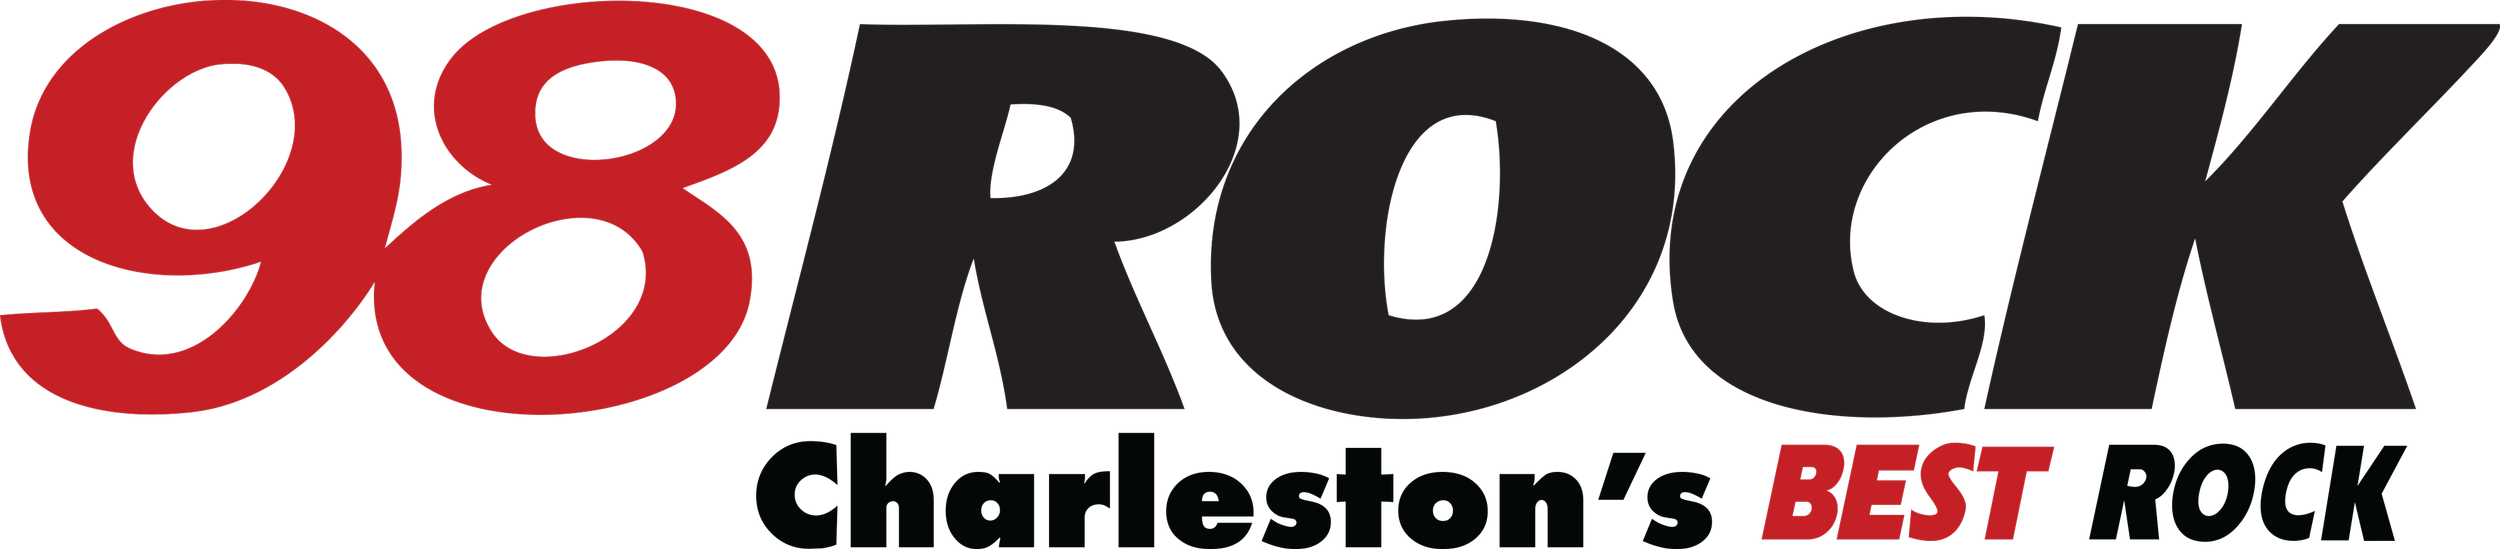 98Rock logo.png